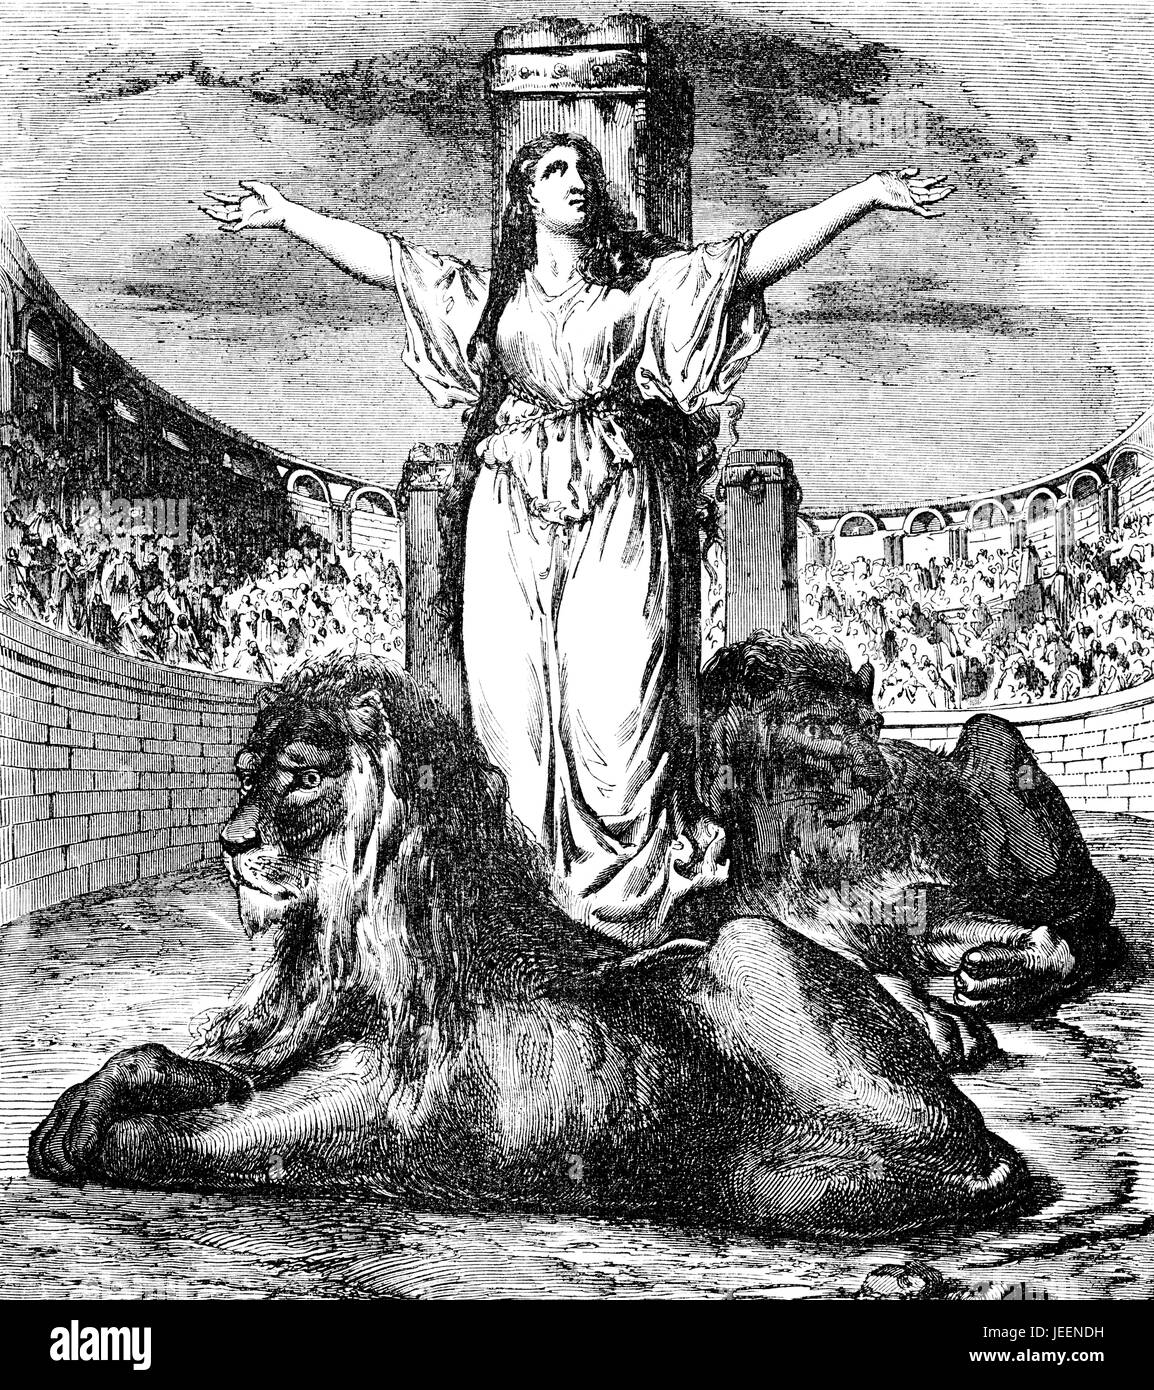 Saint Perez ou Blandine dans l'arène avec les lions, est mort 177 AD, un martyr chrétien pendant le règne de l'empereur Marc Aurèle Banque D'Images